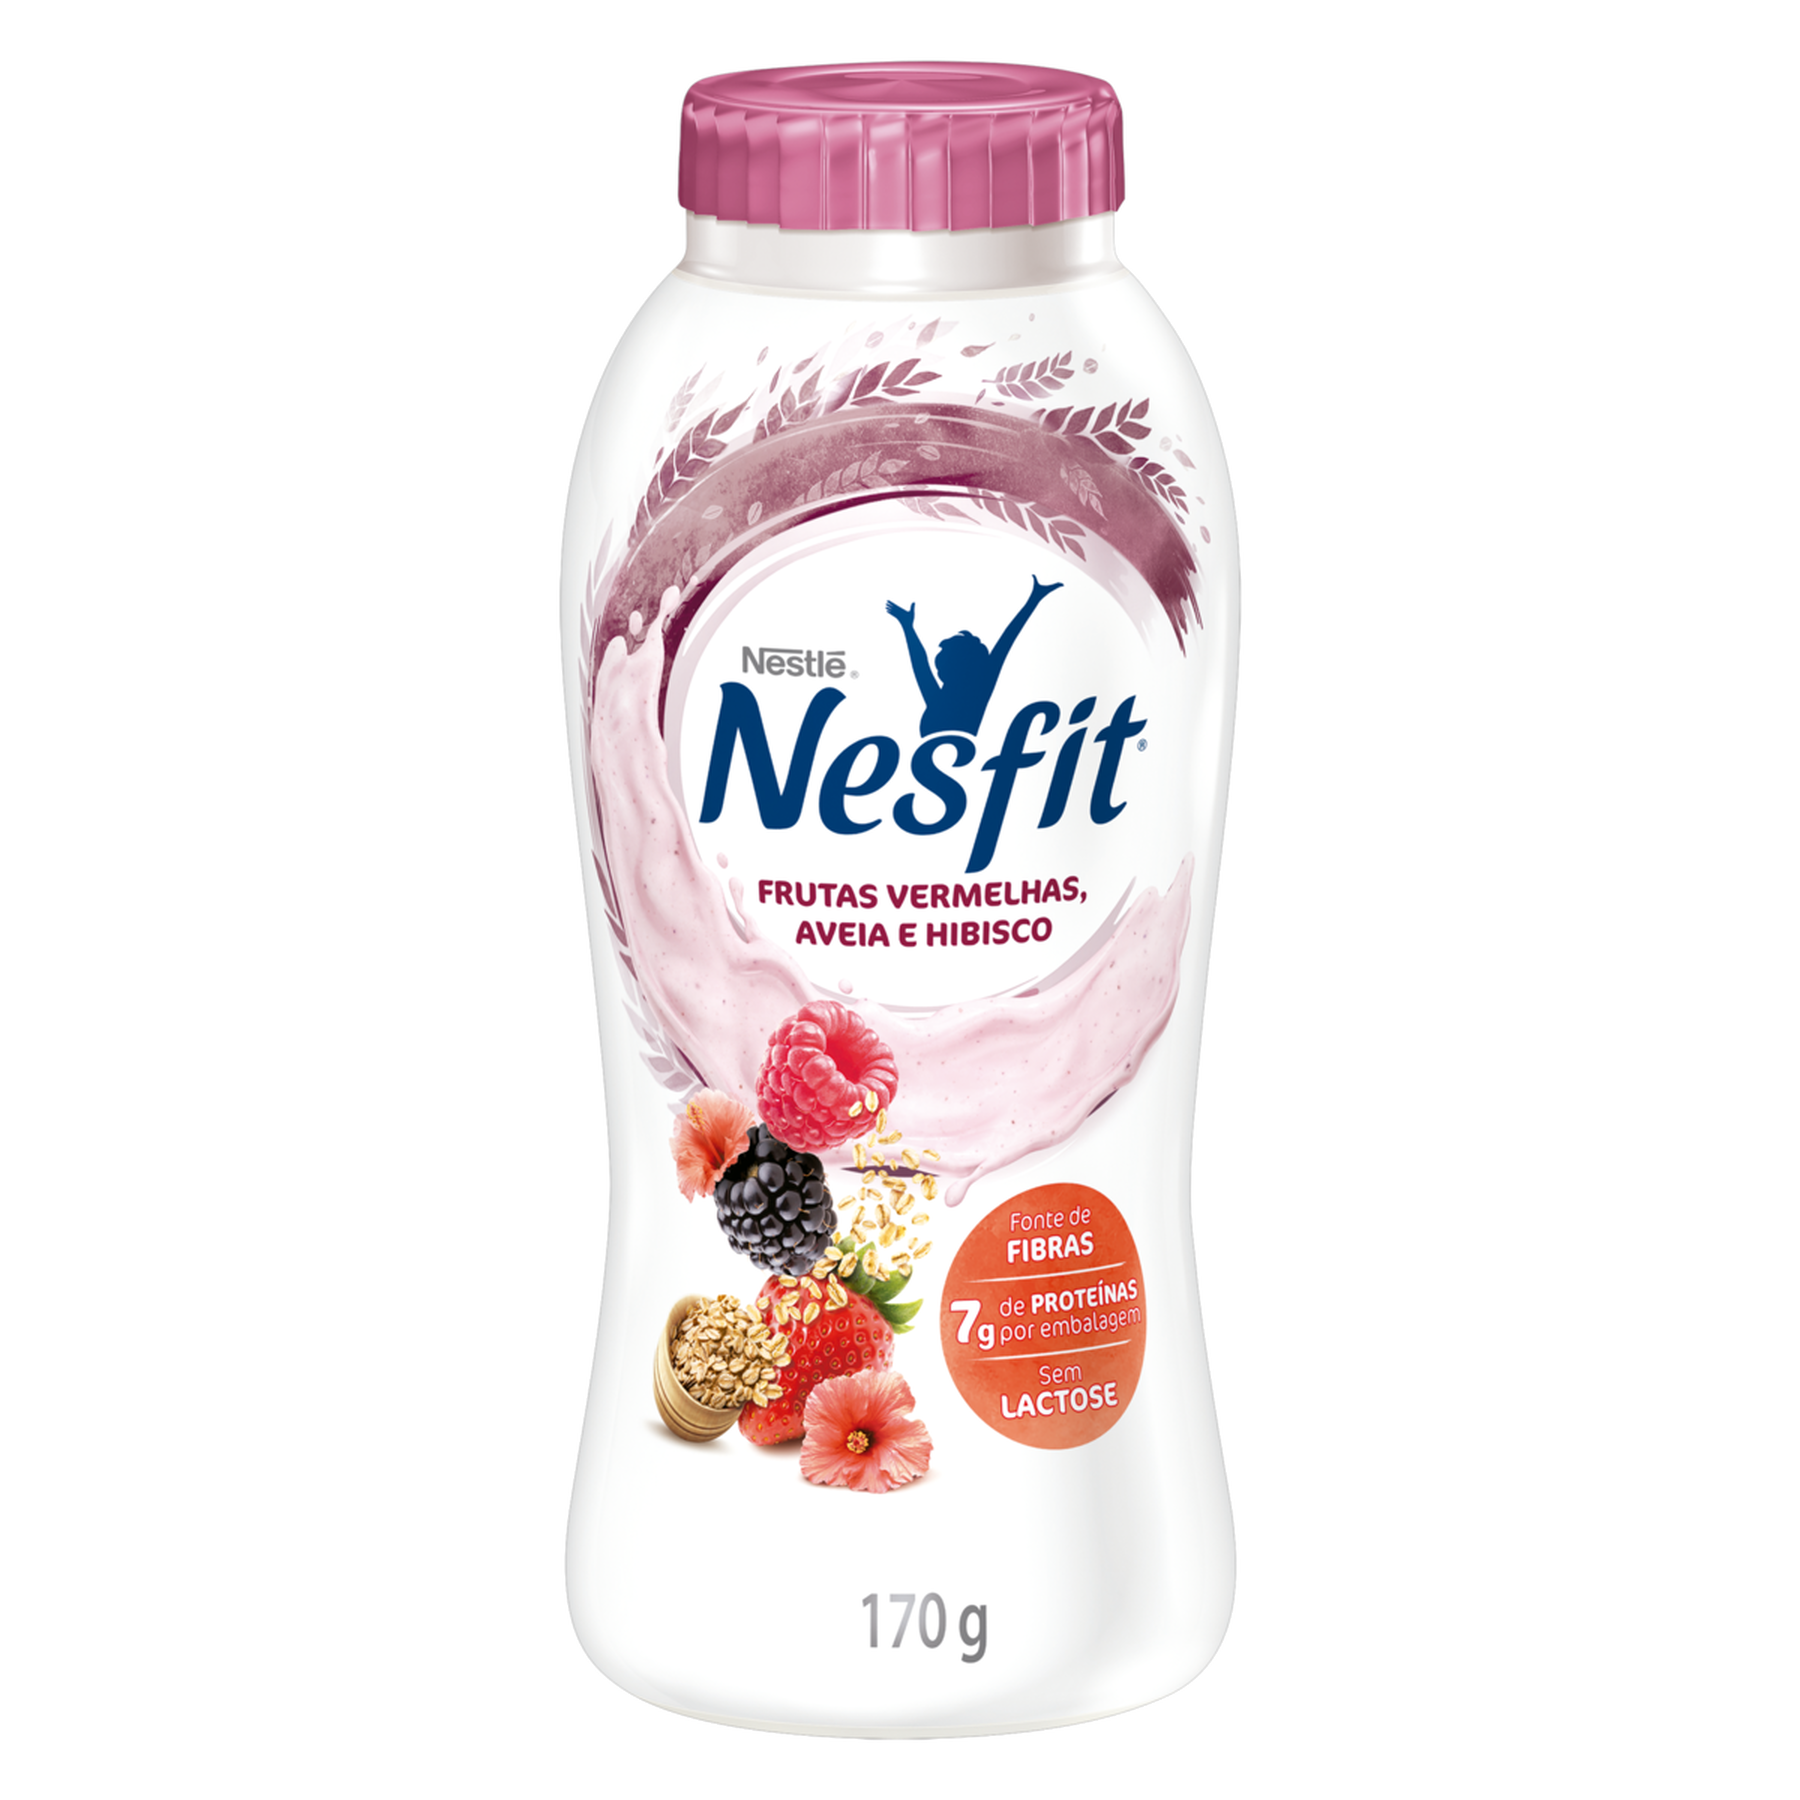 Iogurte Desnatado Frutas Vermelhas, Aveia e Hibisco Zero Lactose Nestlé Nesfit Frasco 170g 